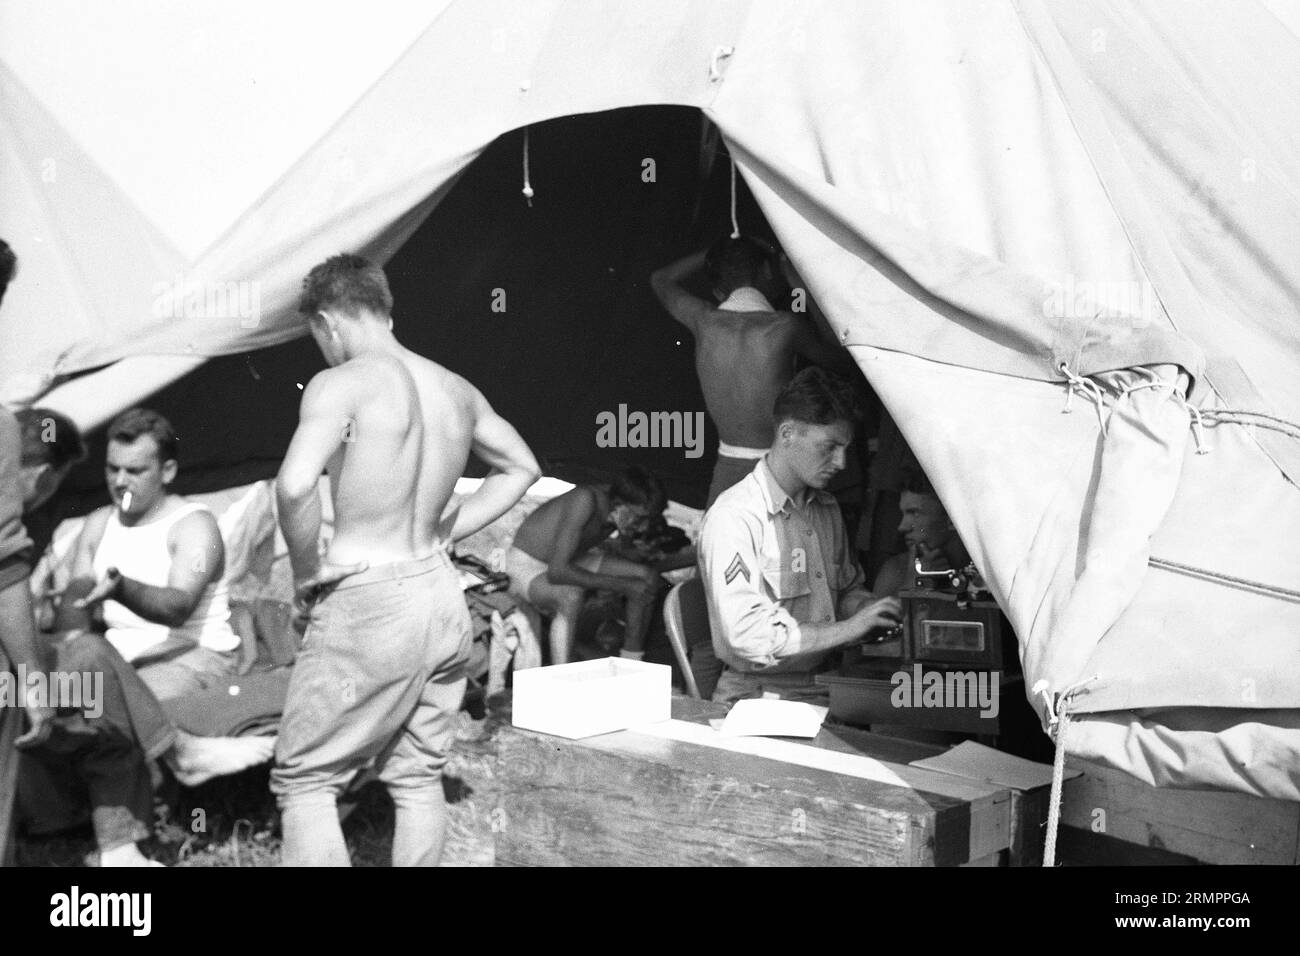 Soldat tapant à l'intérieur de la tente. Les membres de la 114e division d’infanterie de l’armée des États-Unis s’entraînent pour combattre l’Allemagne en Europe pendant la Seconde Guerre mondiale. Banque D'Images